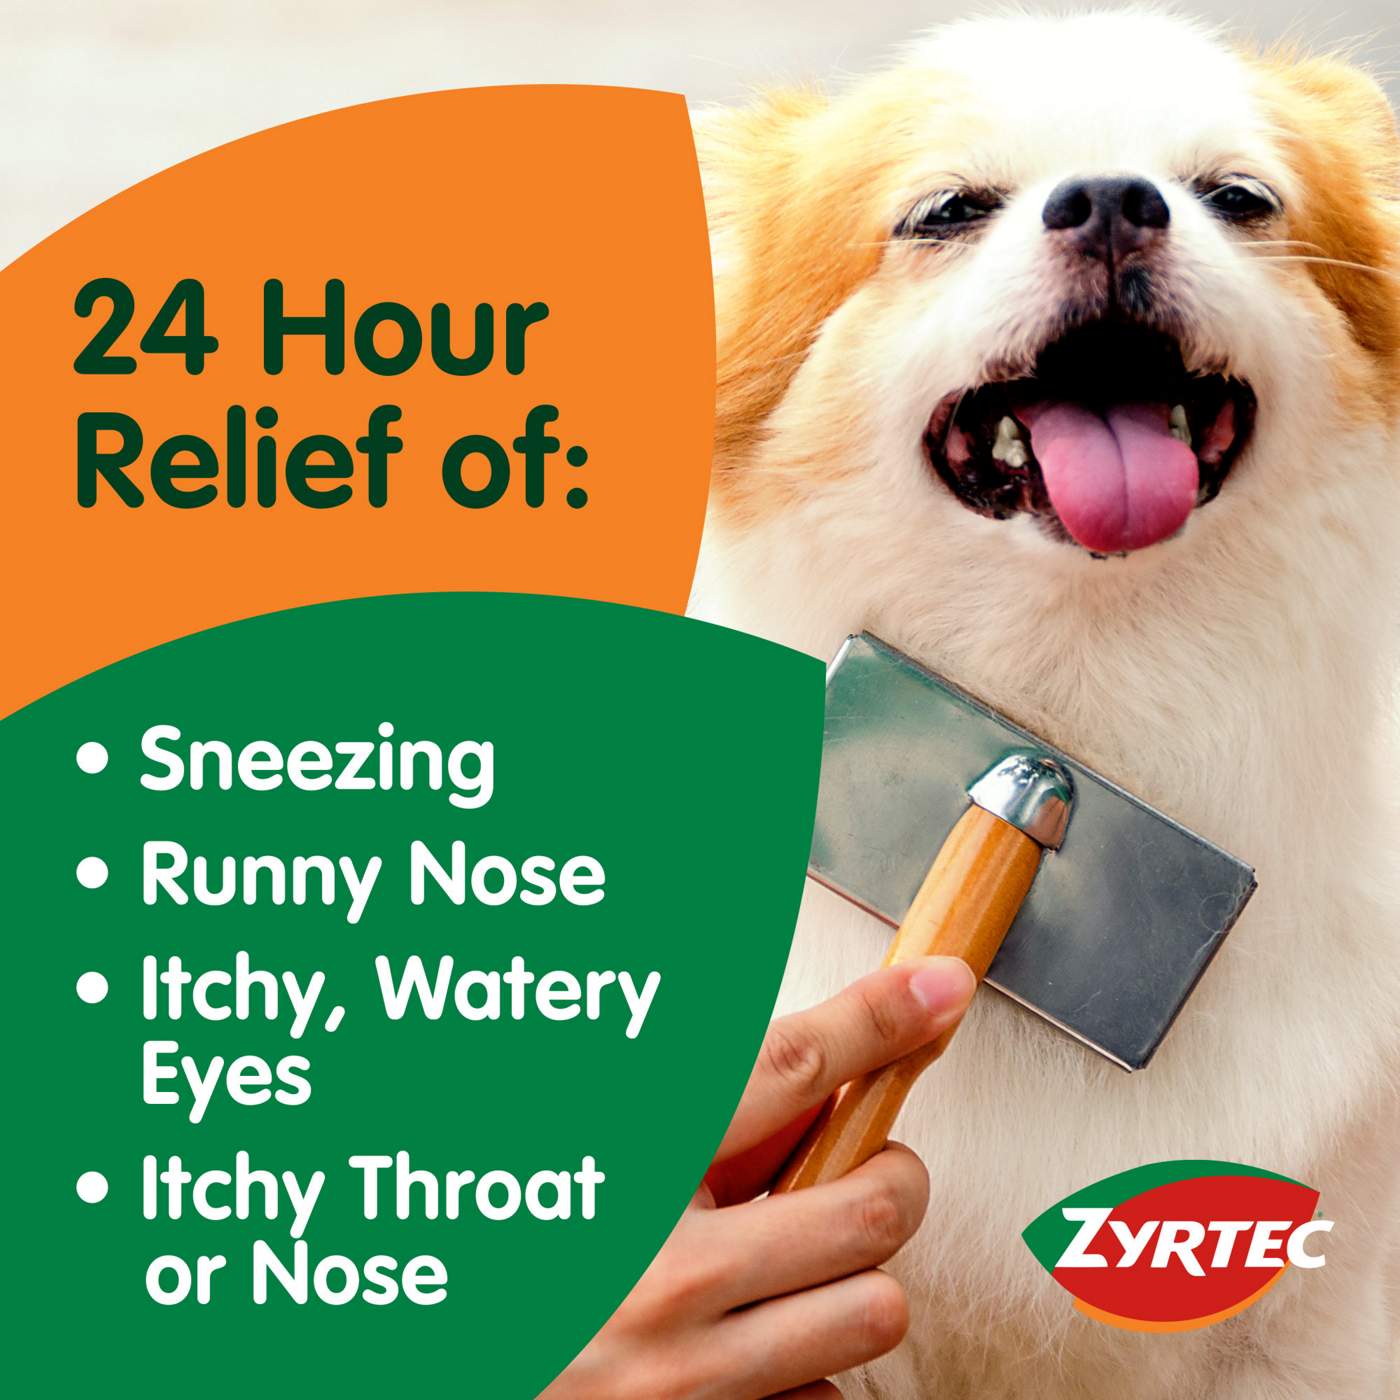 Zyrtec Allergy 24 Hour Relief Liquid Gels; image 2 of 6